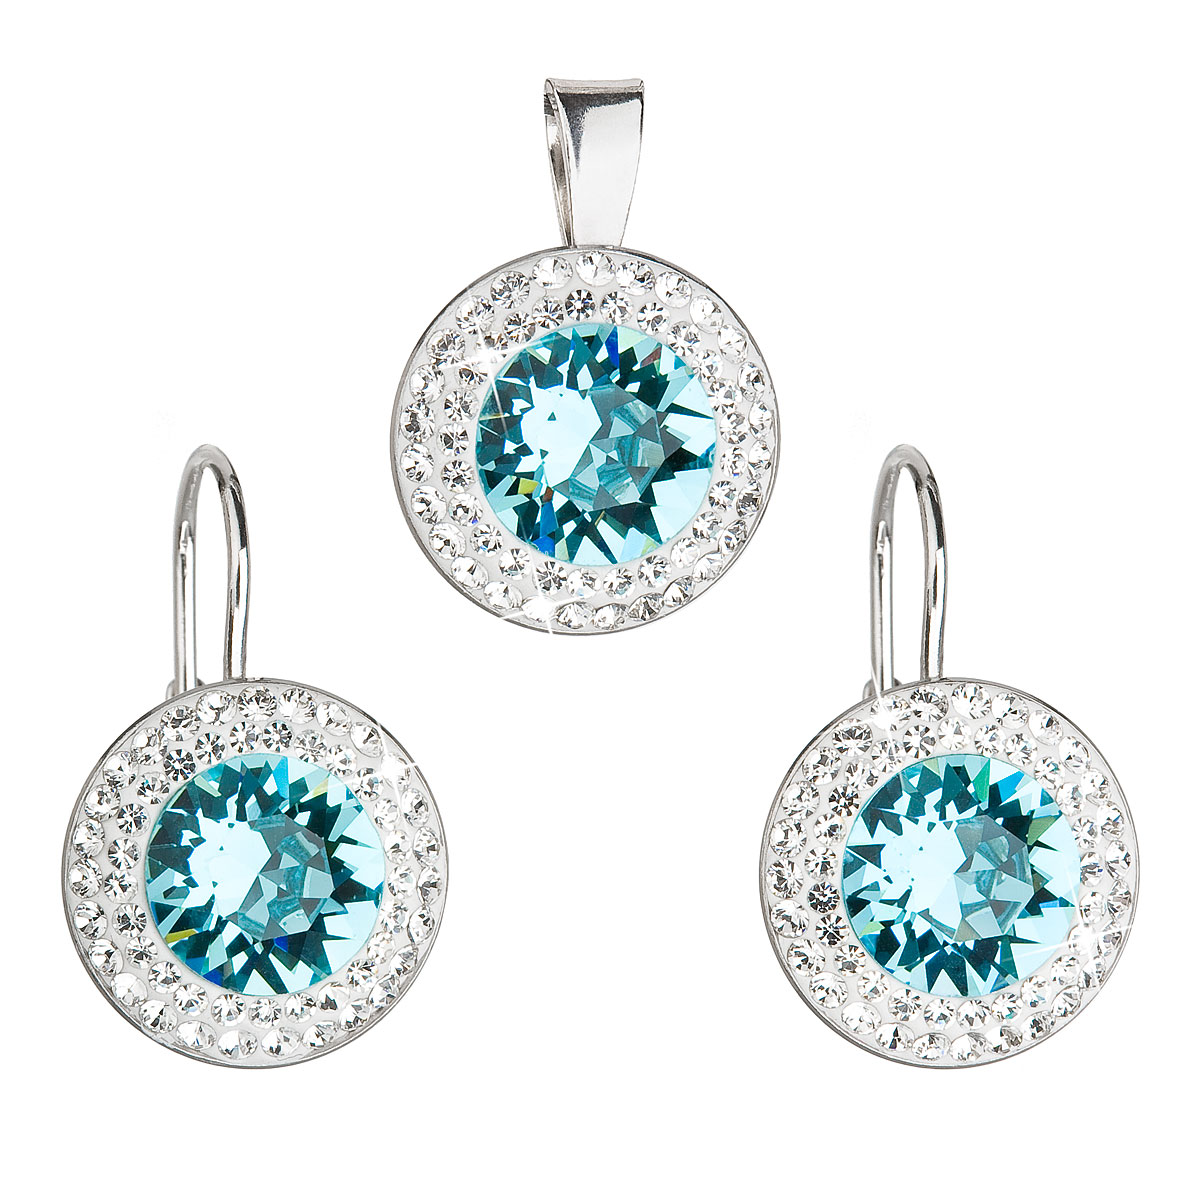 Evolution Group Sada šperků s krystaly Swarovski náušnice a přívěsek modré kulaté 39107.3 turquoise